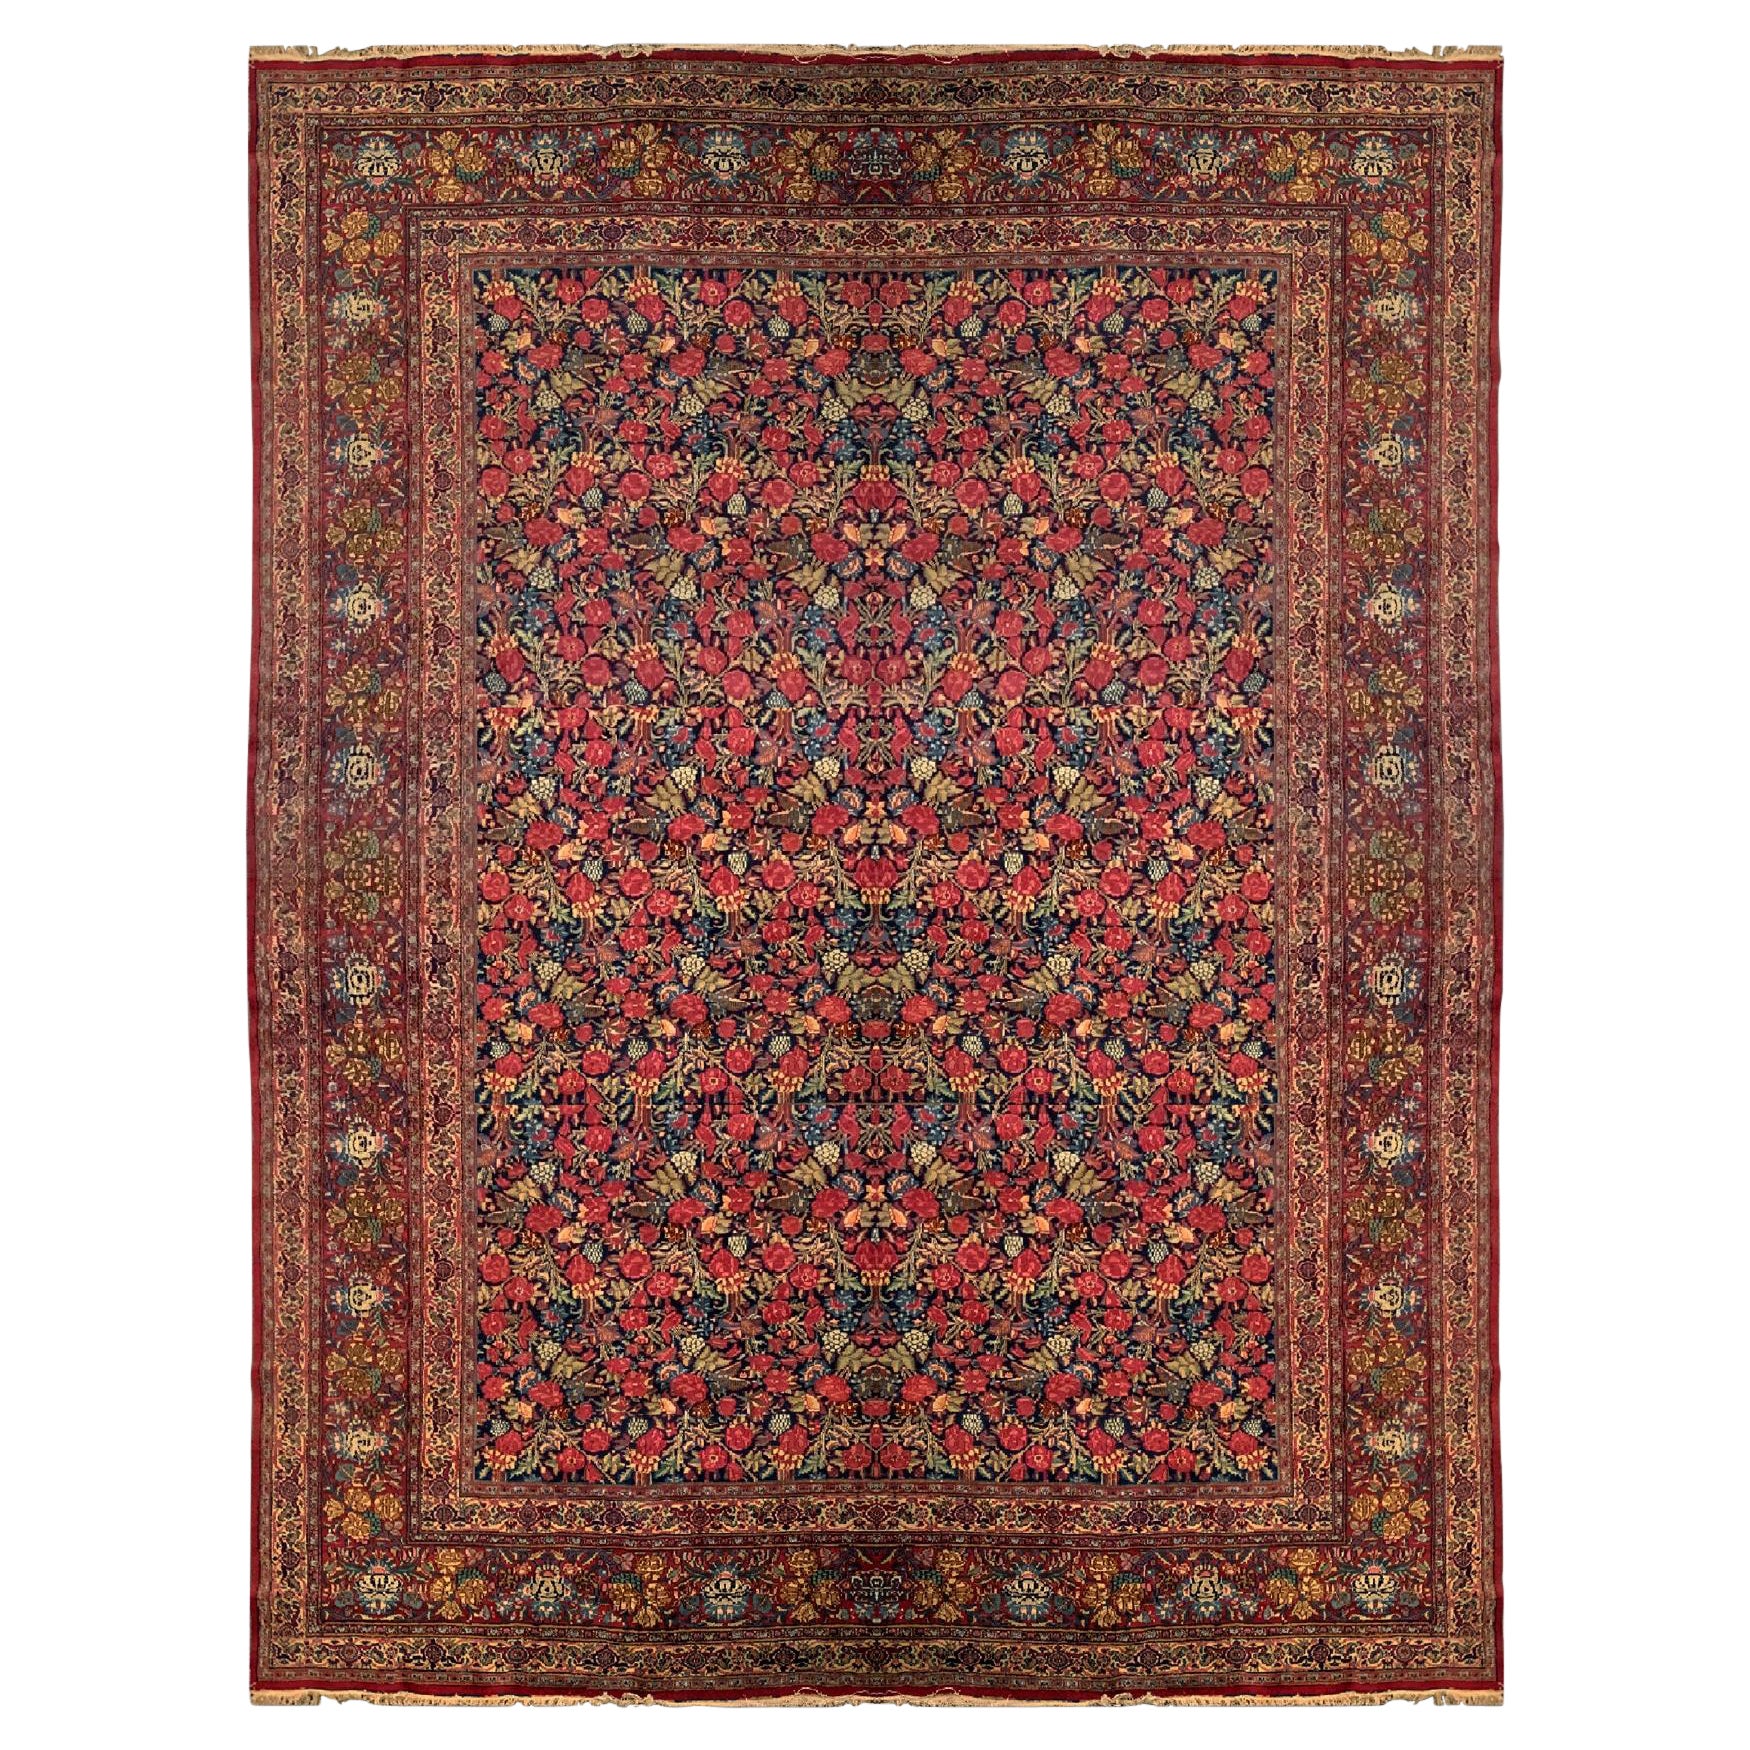 Oversize Carpet Antique Kerman Rug, Floral All Over Design